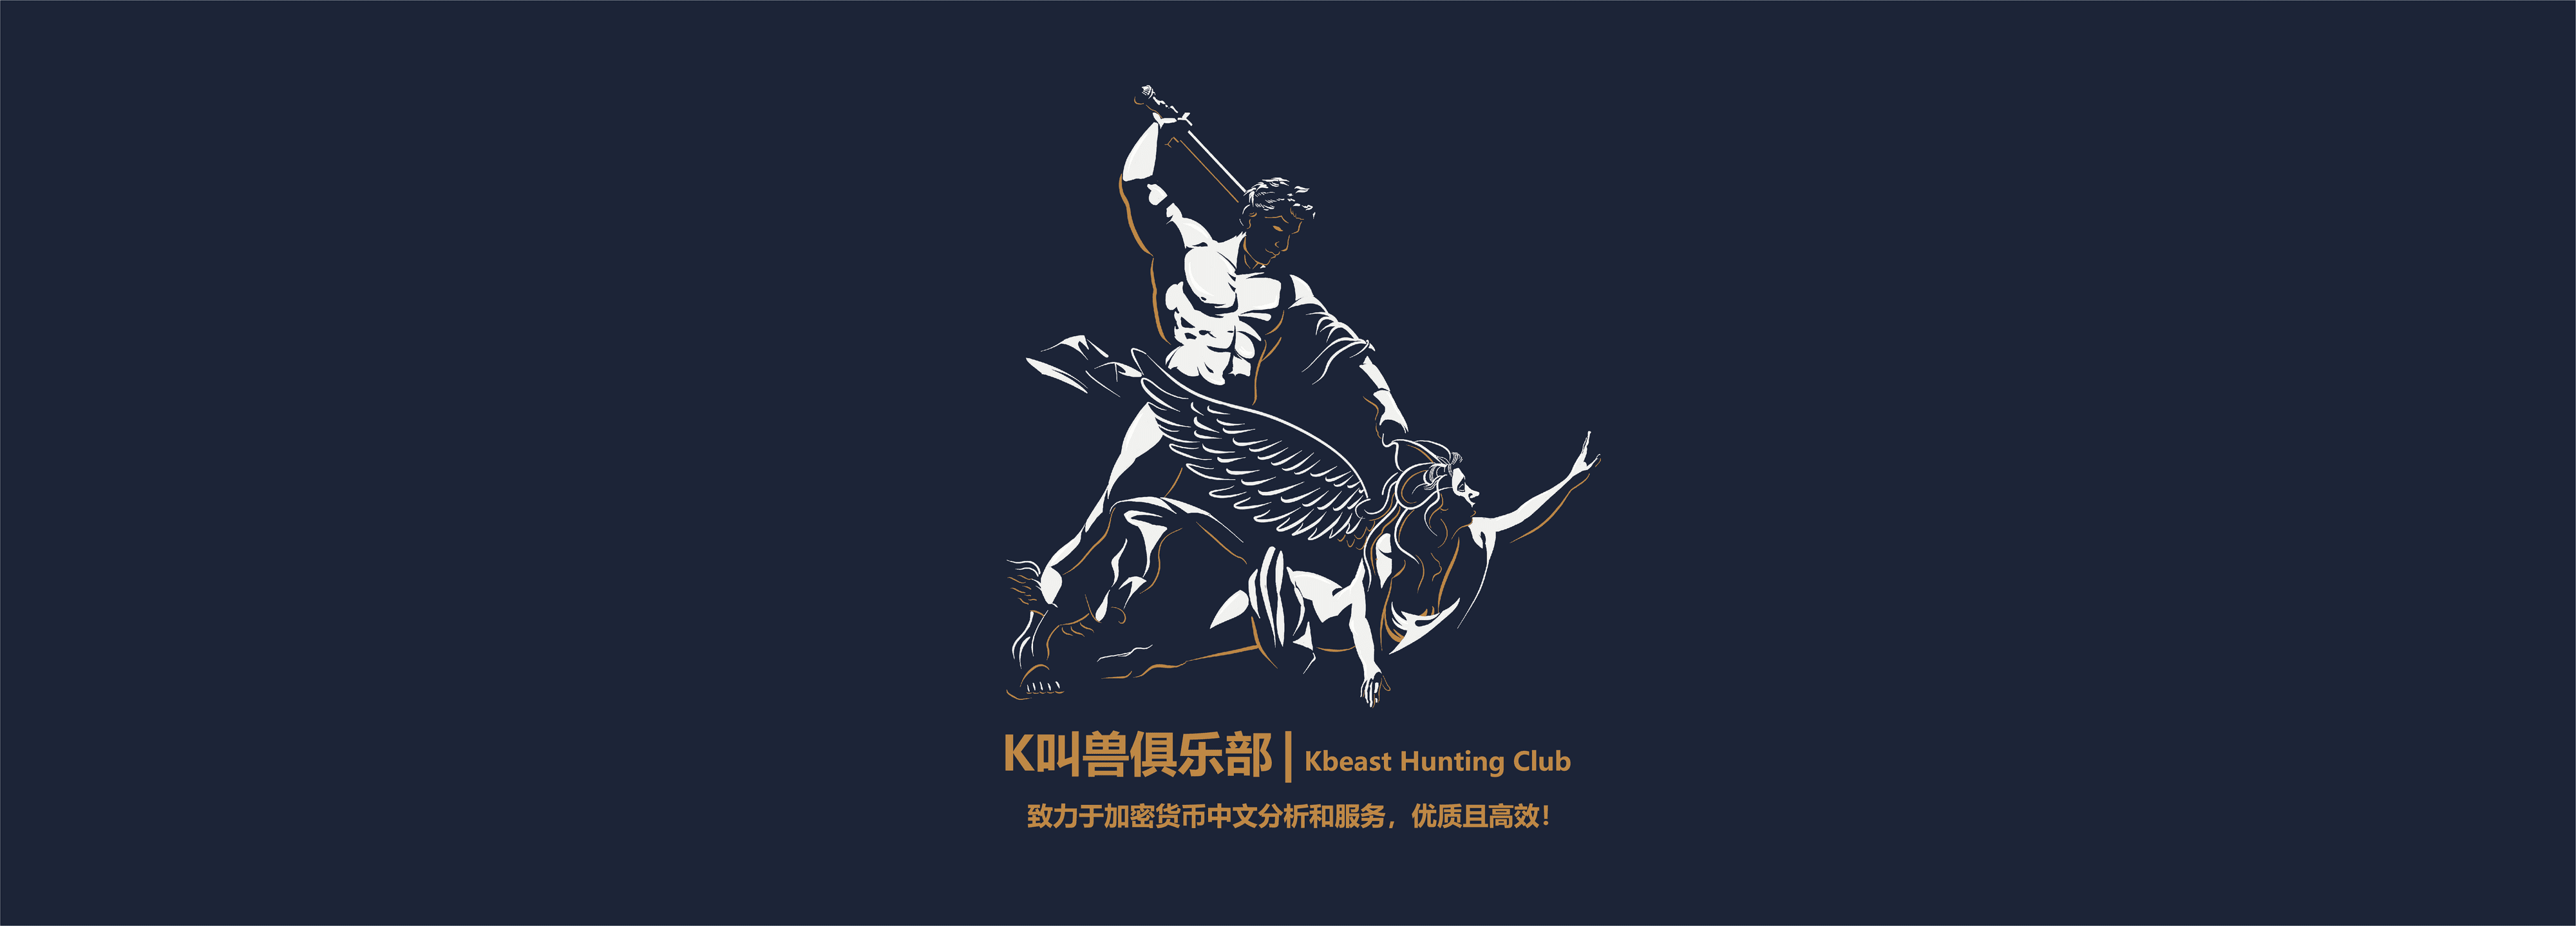 KbeastHuntingClub Banner